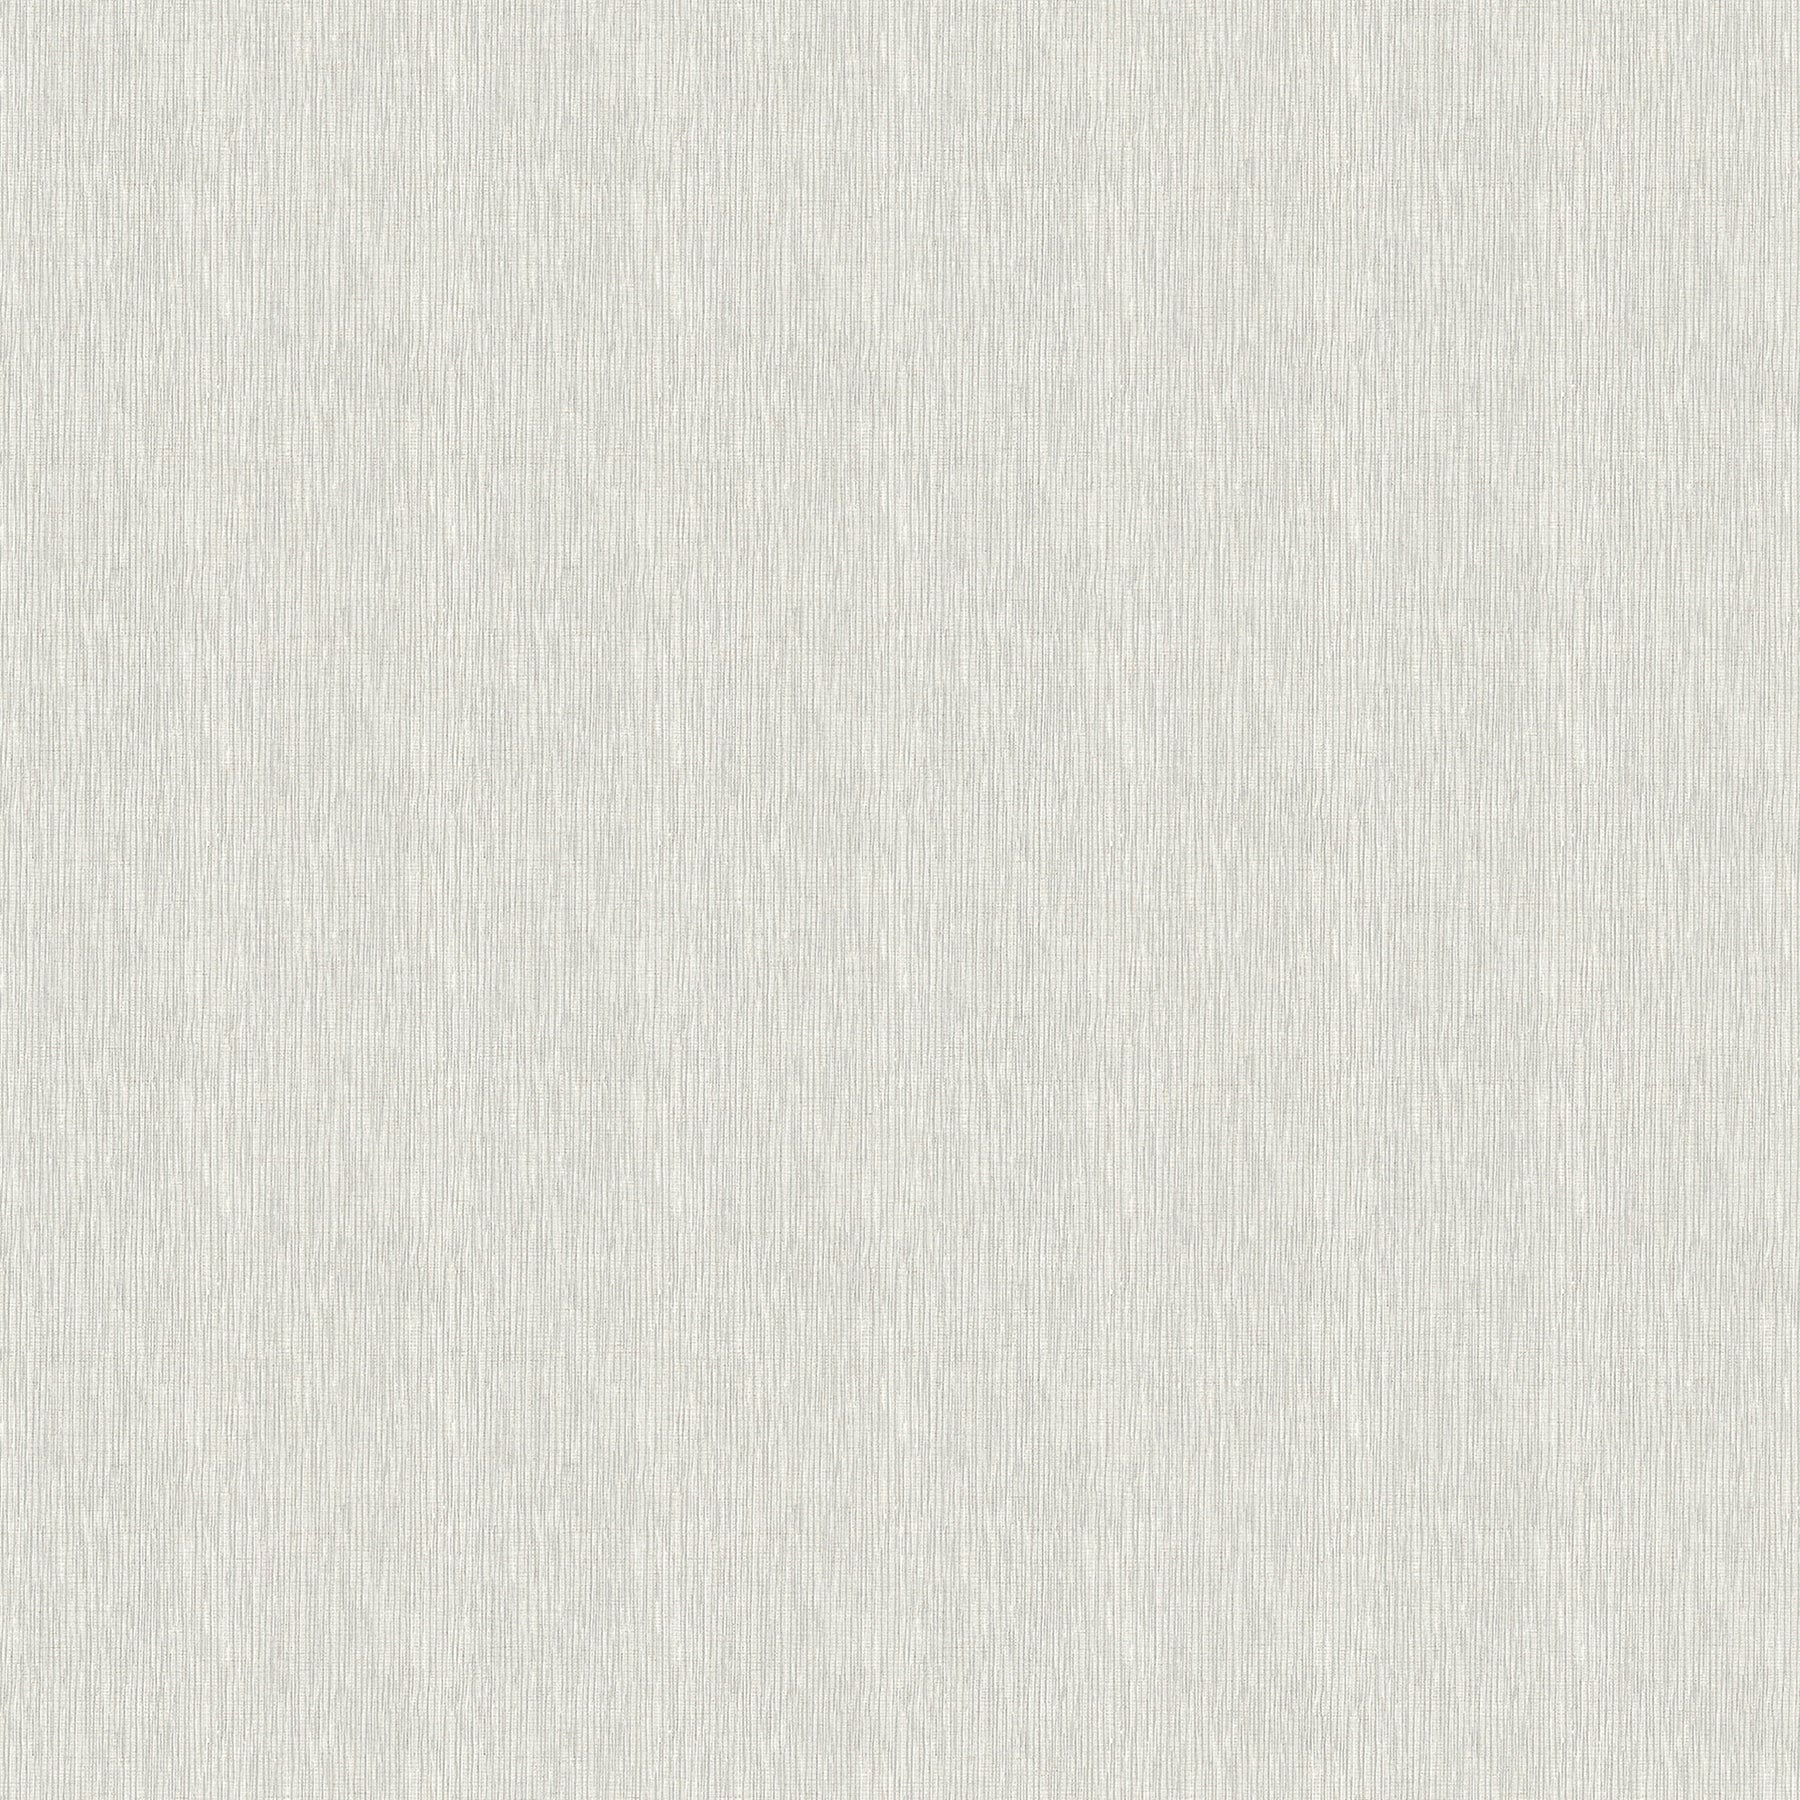 Purchase 2979-36976-5 Bali Seaton Grey Faux Grasscloth Grey by Advantage Wallpaper